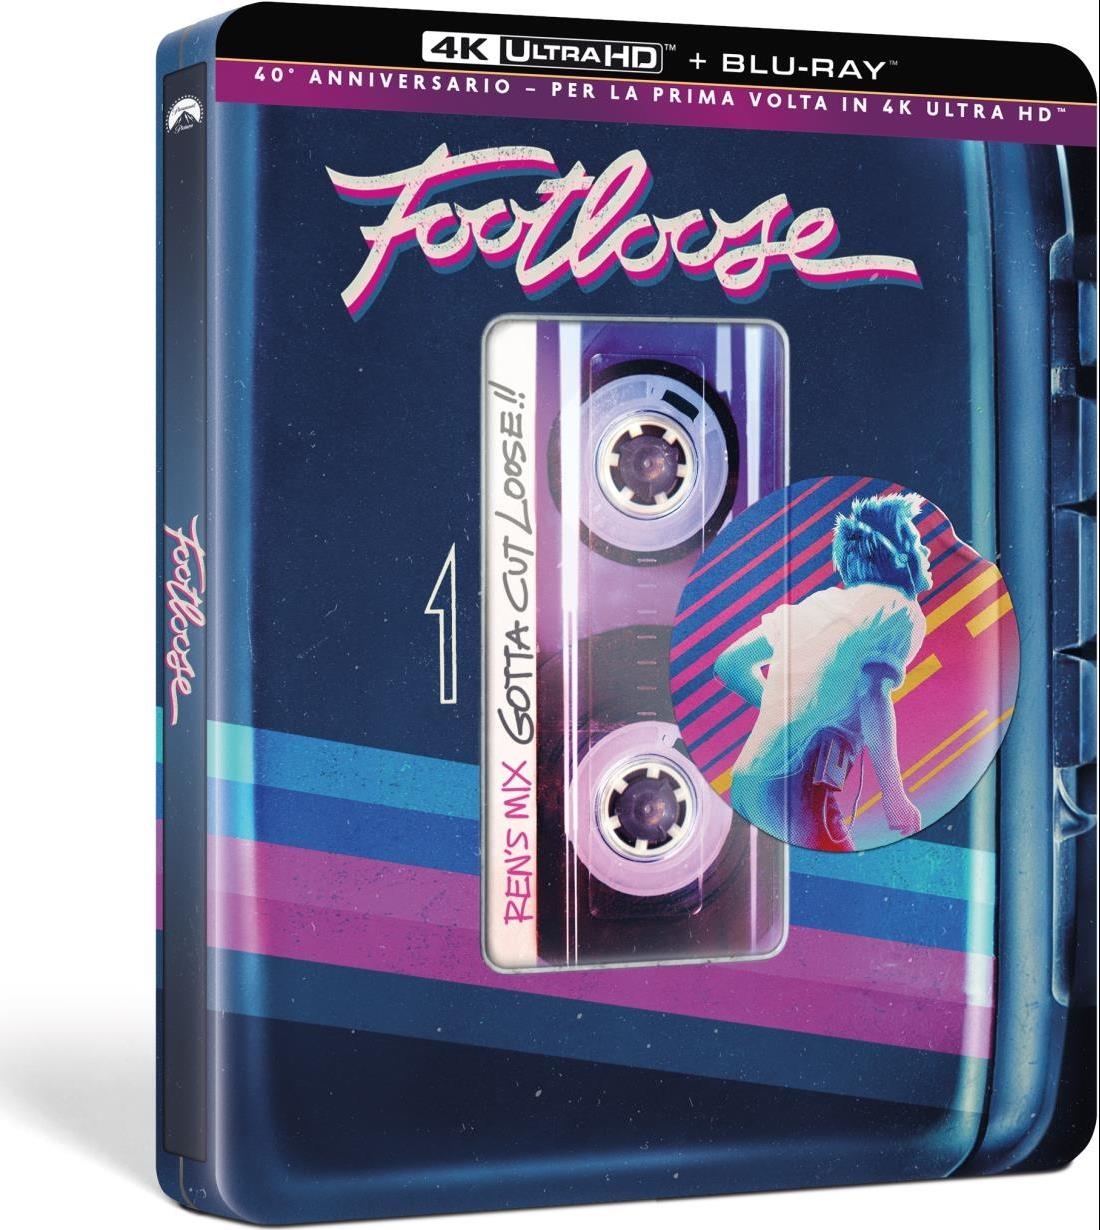 Blu-Ray 4K Uhd Footloose (Edizione 40 Anniversario) (Steelbook) (4K Uktra Hd+Blu-Ray) NUOVO SIGILLATO, EDIZIONE DEL 15/02/2024 SUBITO DISPONIBILE